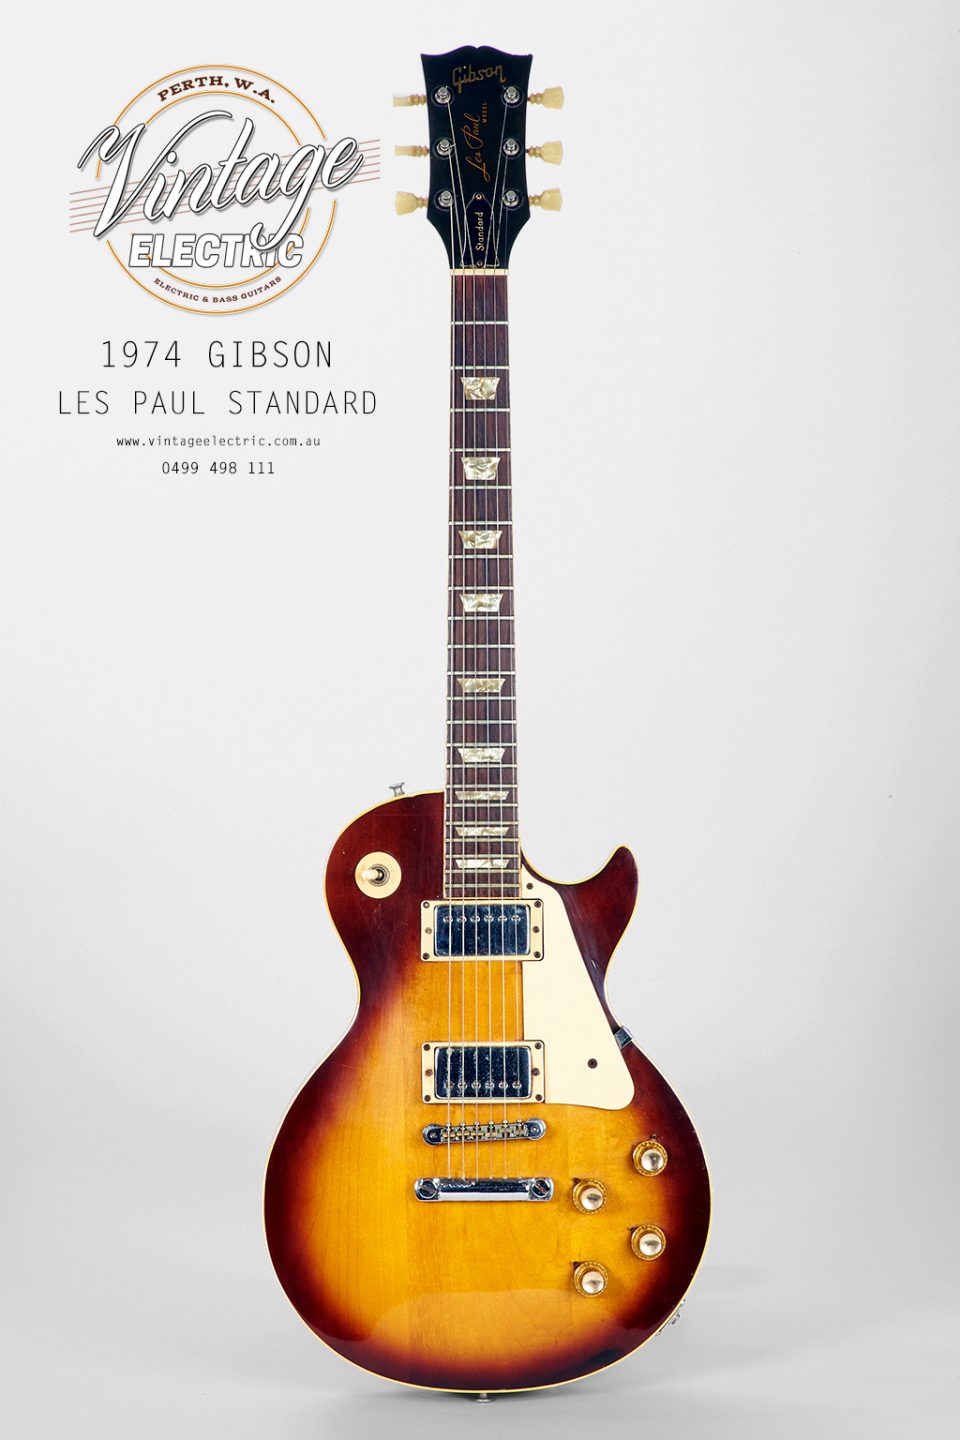 1974 Gibson Les Paul Standard Sunburst